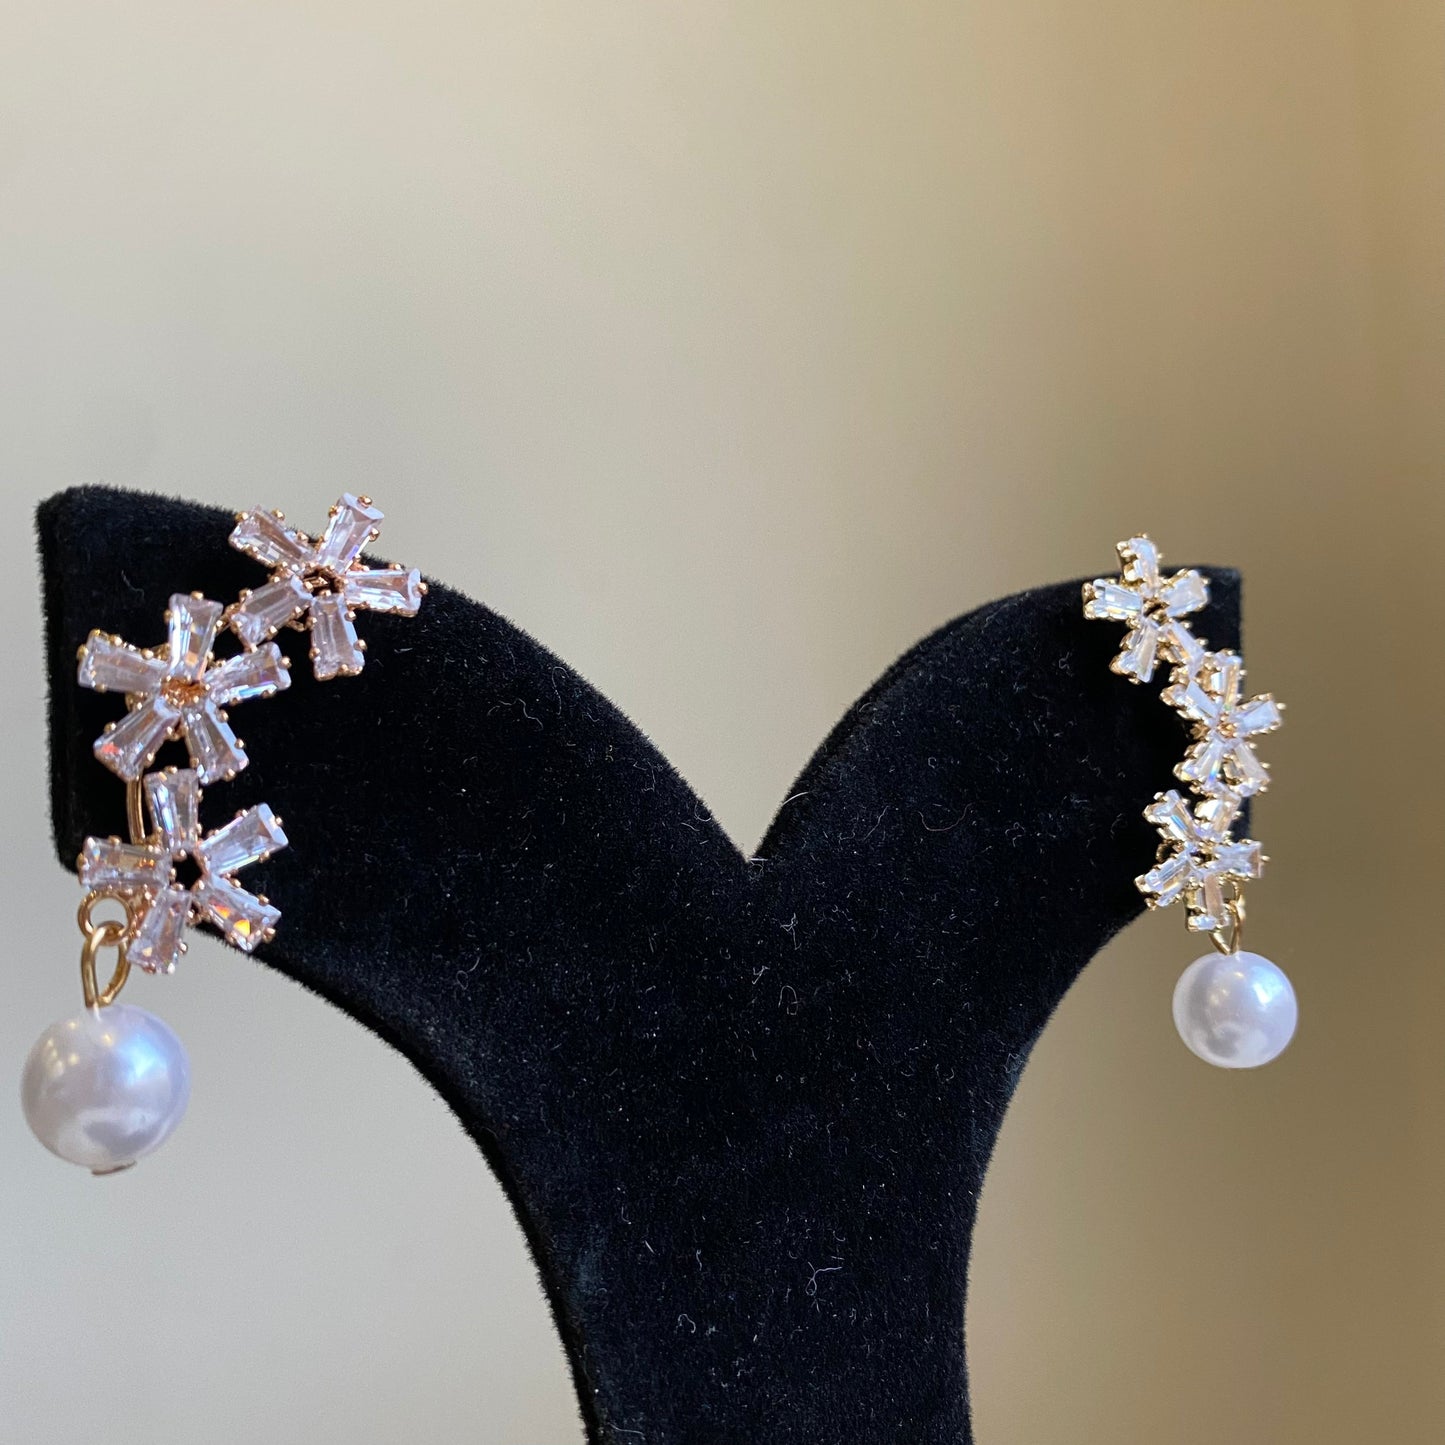 Flower Trio earrings